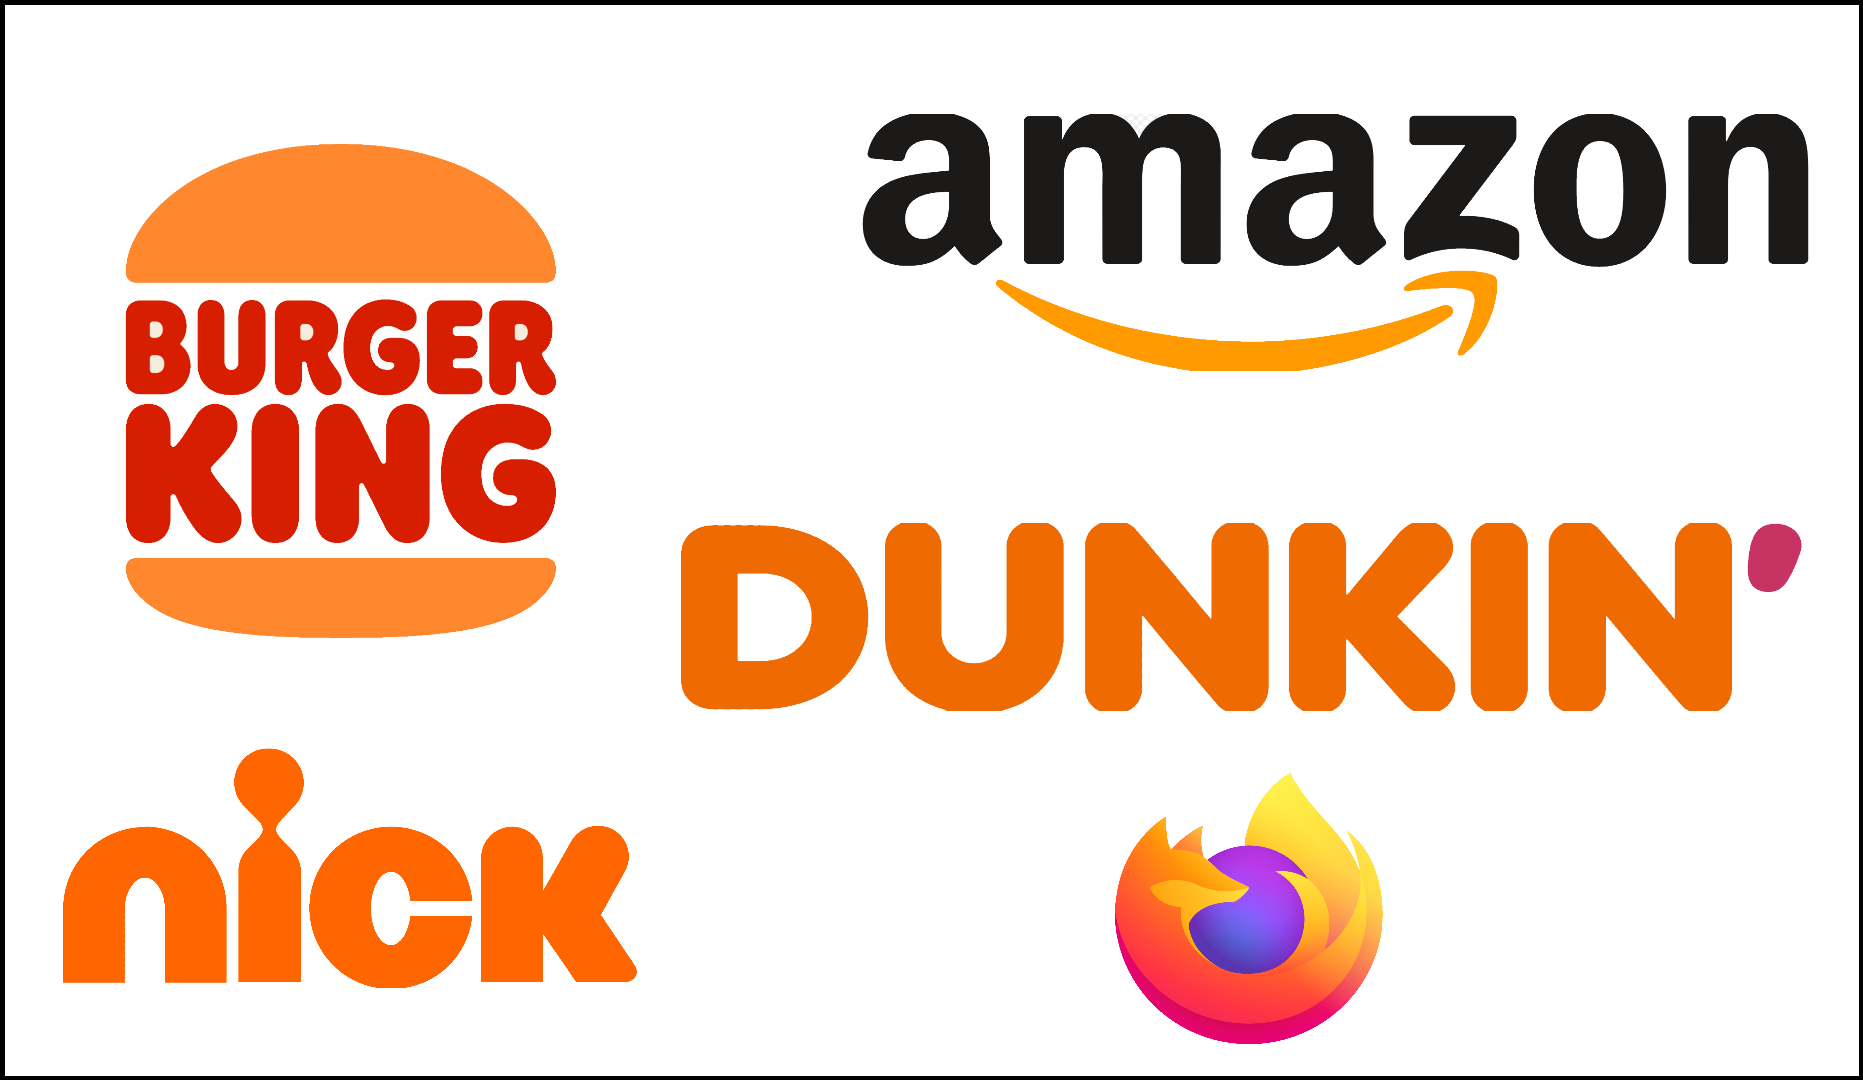 Sampling of orange logos